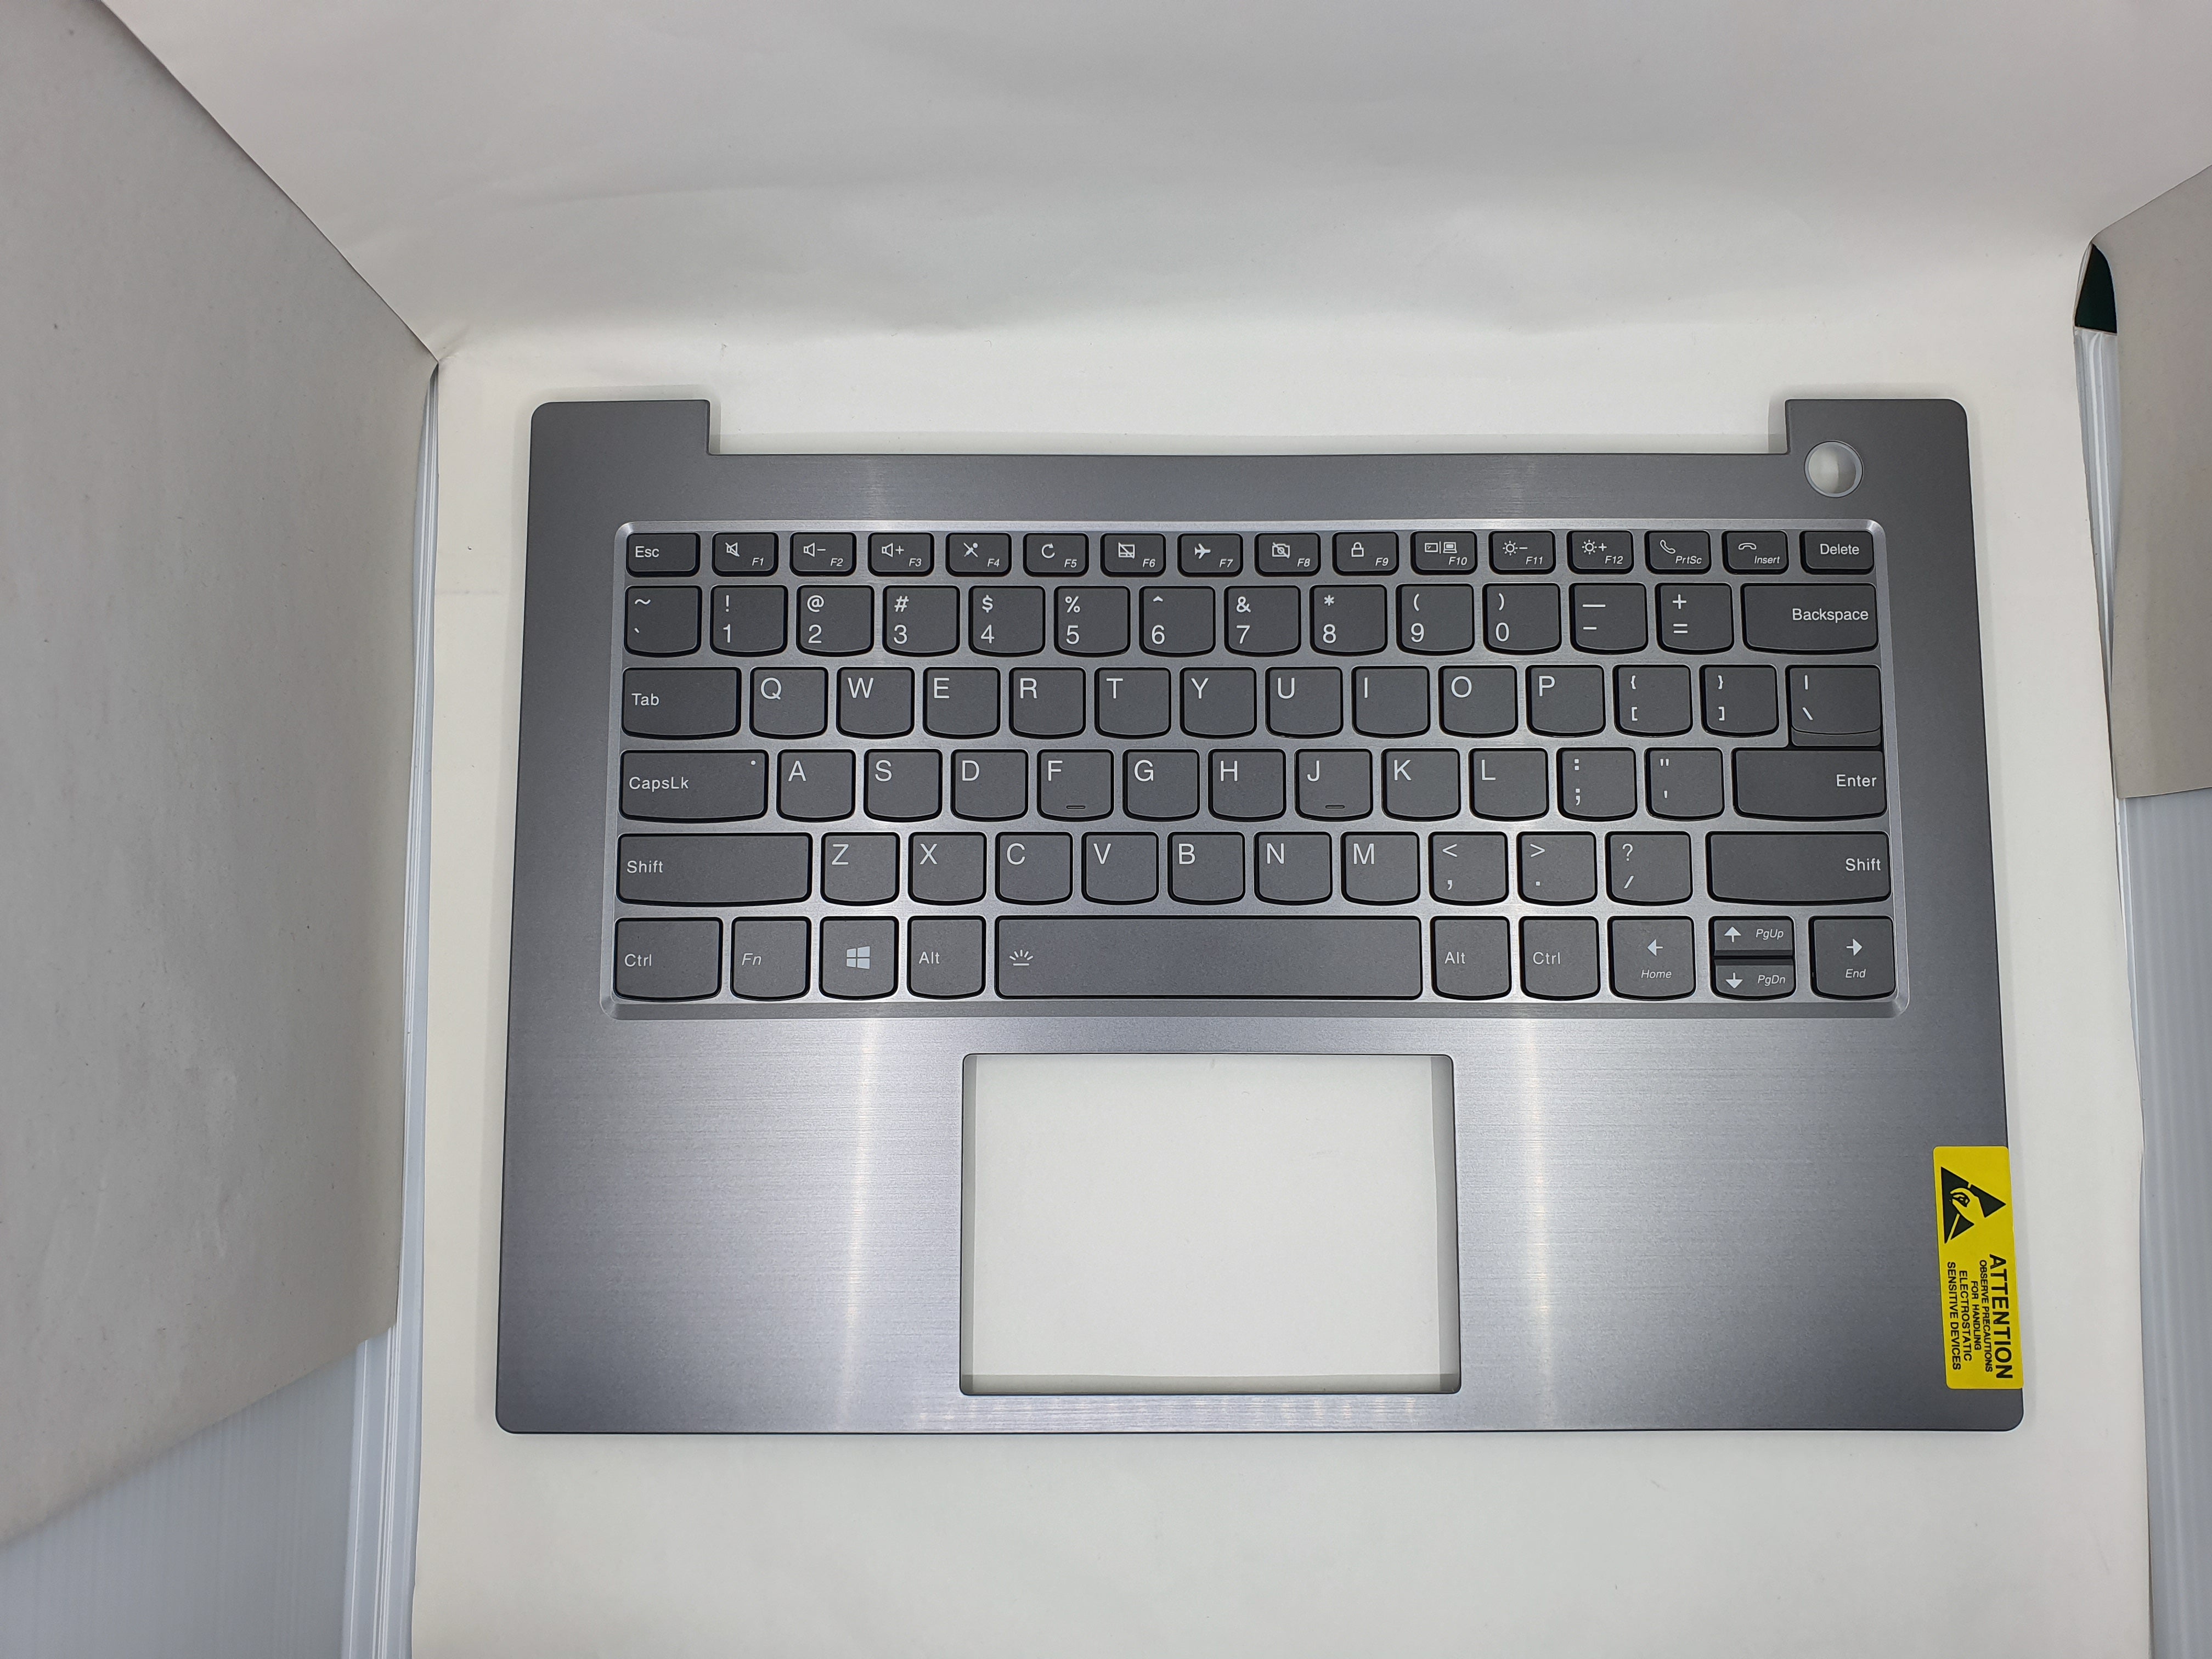 Lenovo Keyboard Keys ThinkBook 14-IML WL for Lenovo ThinkBook 14